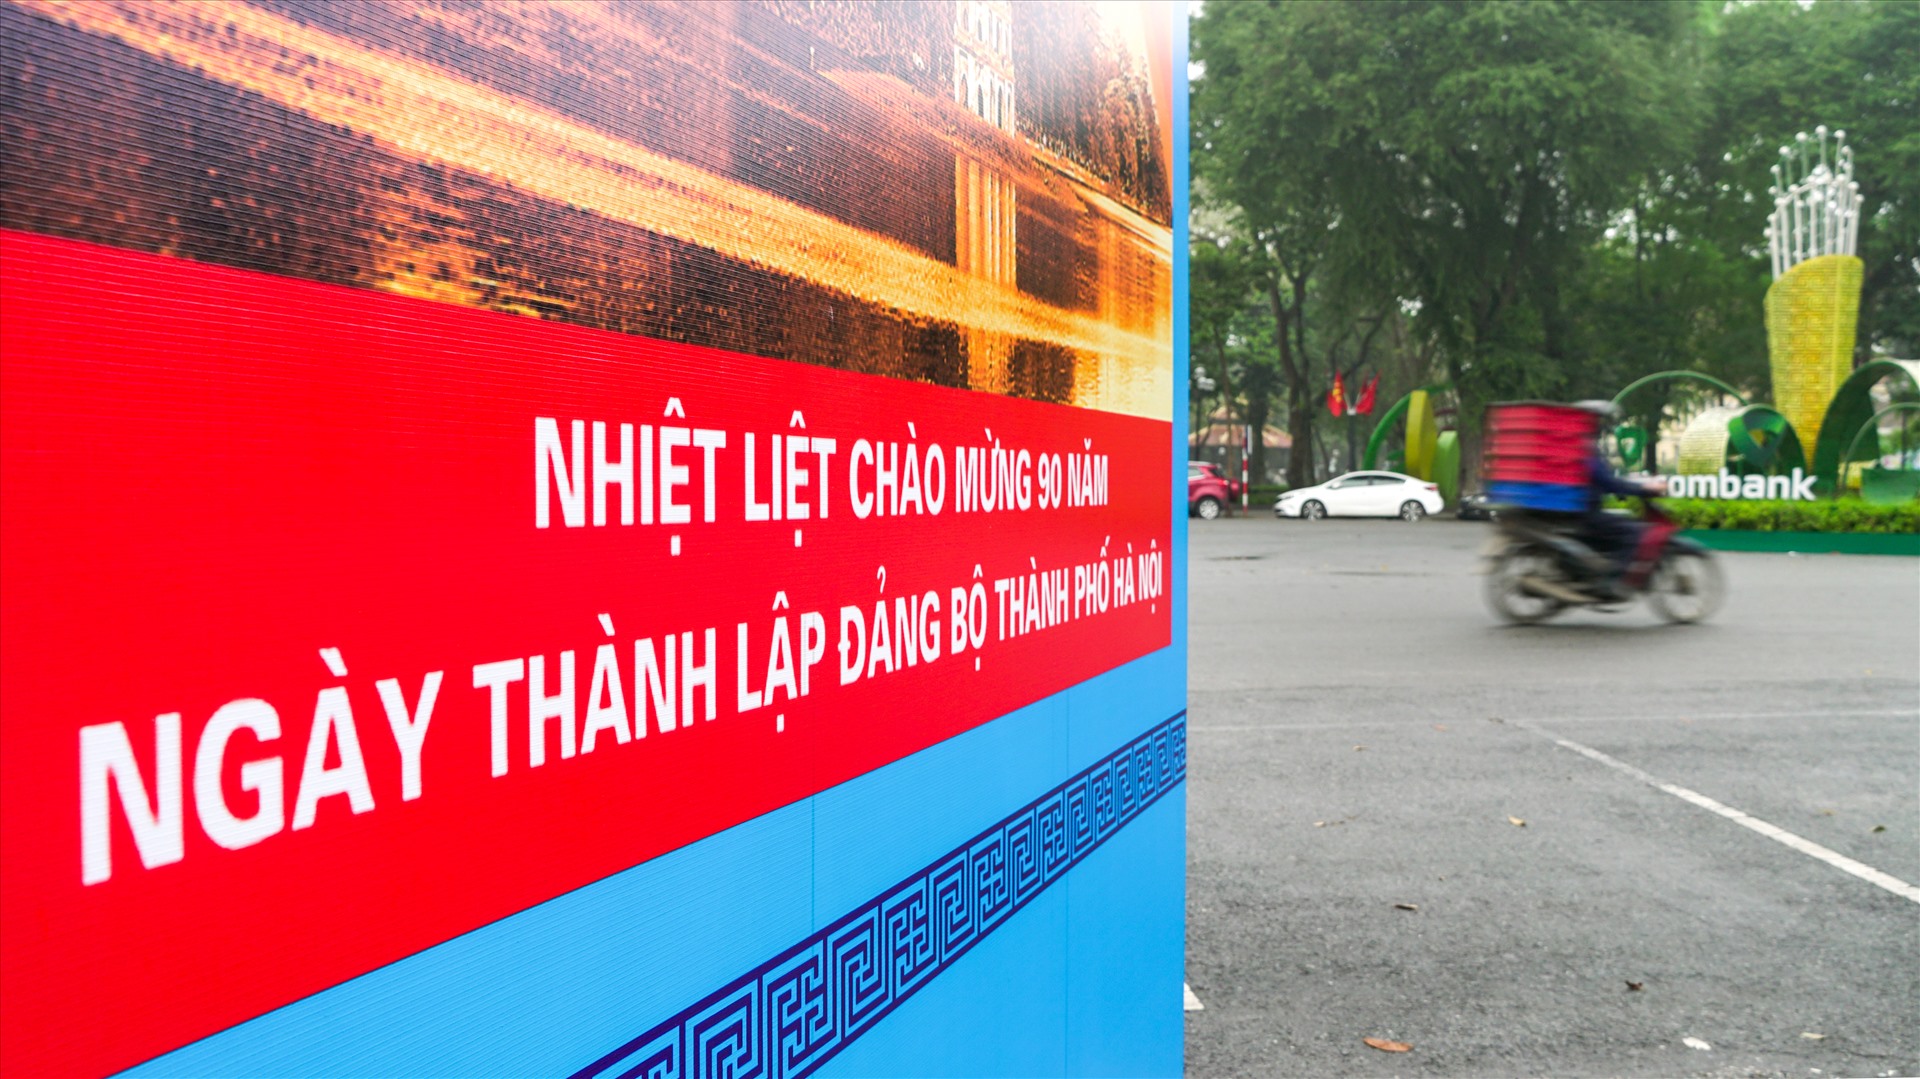 Tấm áp phích cỡ lớn với dòng chữ “Nhiệt liệt chào mừng 90 năm ngày thành lập Đảng bộ thành phố Hà Nội” được treo trang trọng trên nhiều tuyến phố trung tâm. Ảnh: Tạ Quang.